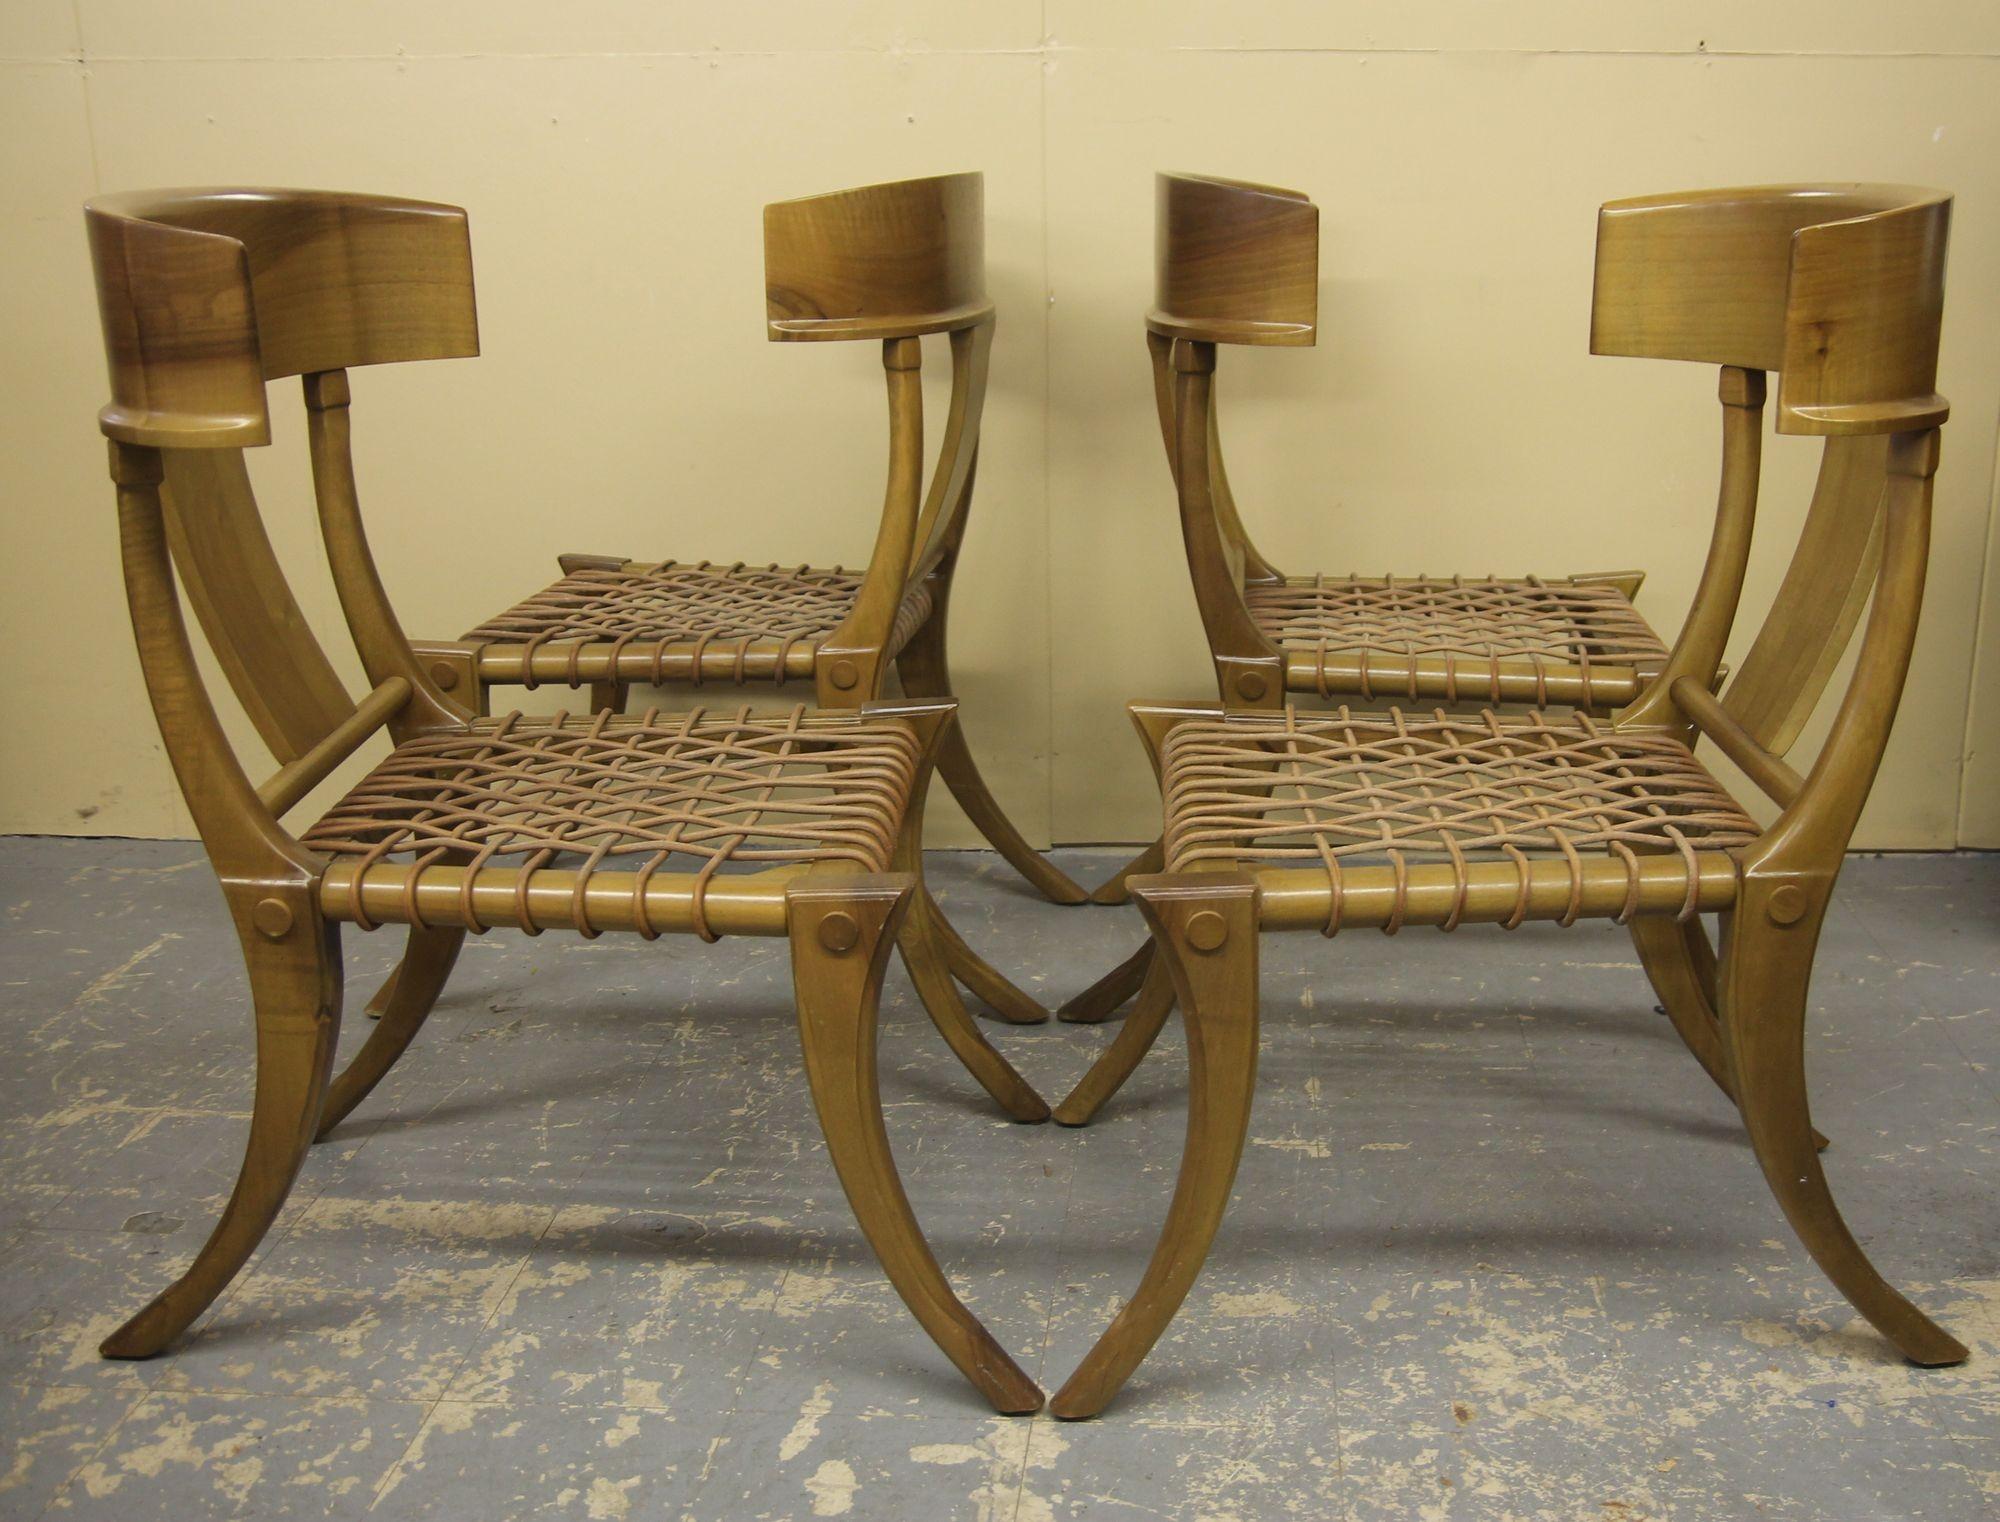 Nous avons le plaisir de vous proposer ce superbe ensemble de 4 chaises Klismos. Ces chaises de salle à manger classiques sont en très bon état et conservent leurs coussins de siège en daim signés d'origine. Peut également servir de chaises